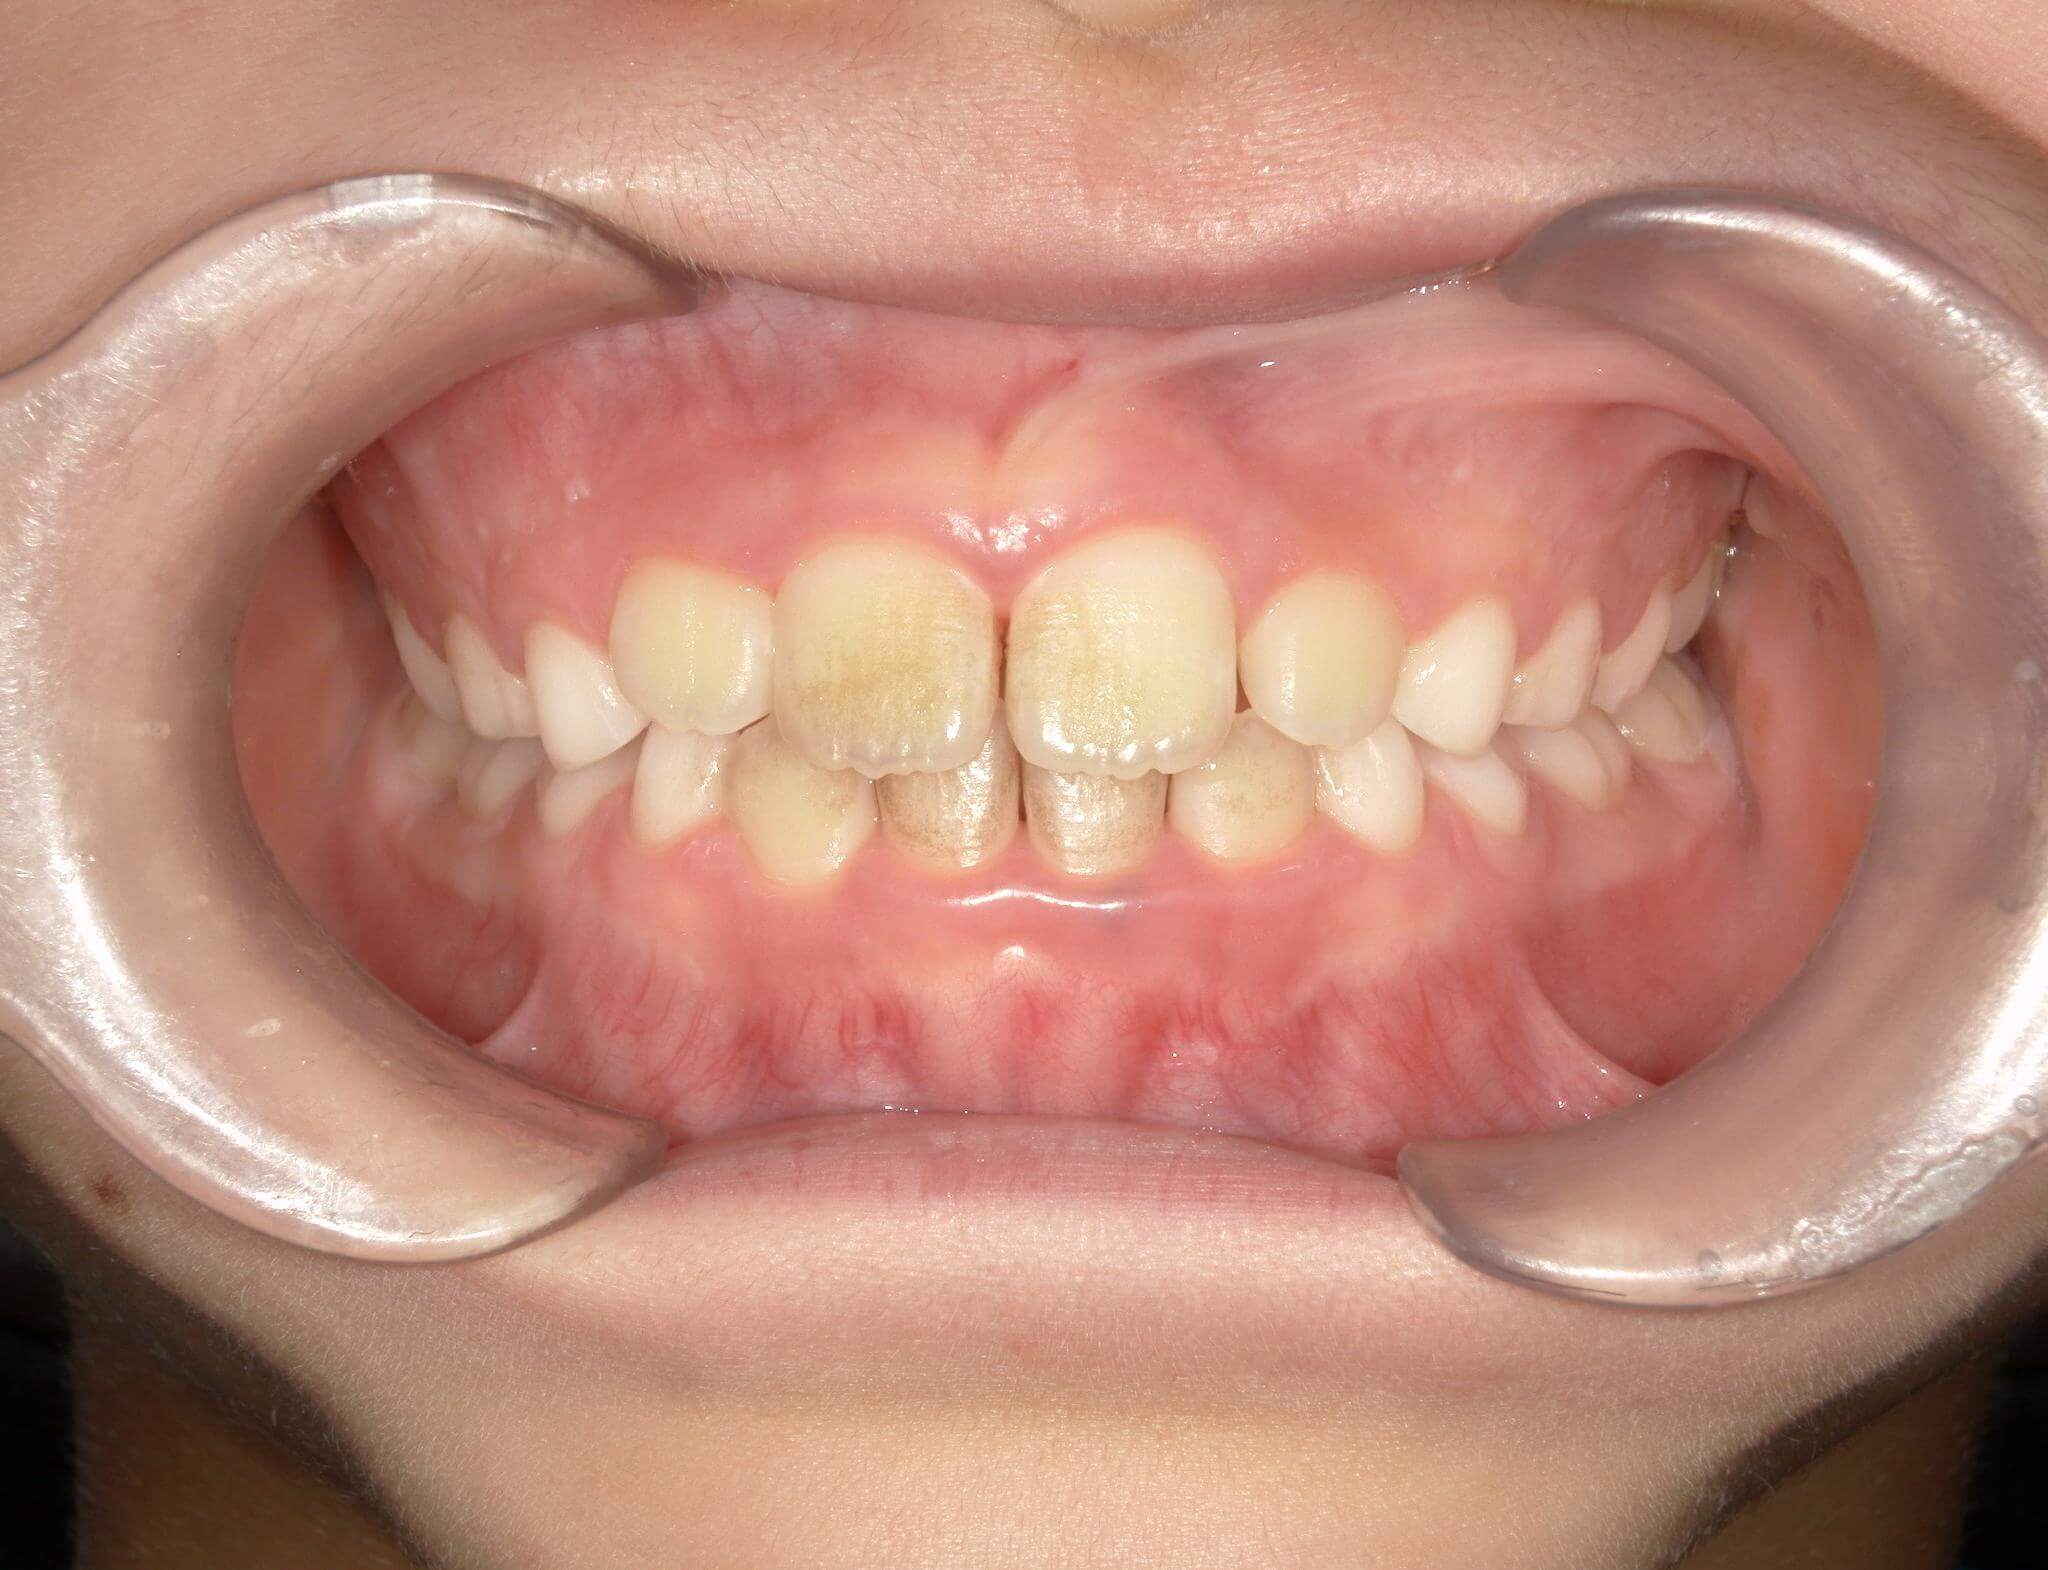 歯列はきれいになってきたが普段口呼吸をしているため歯の表面に着色している